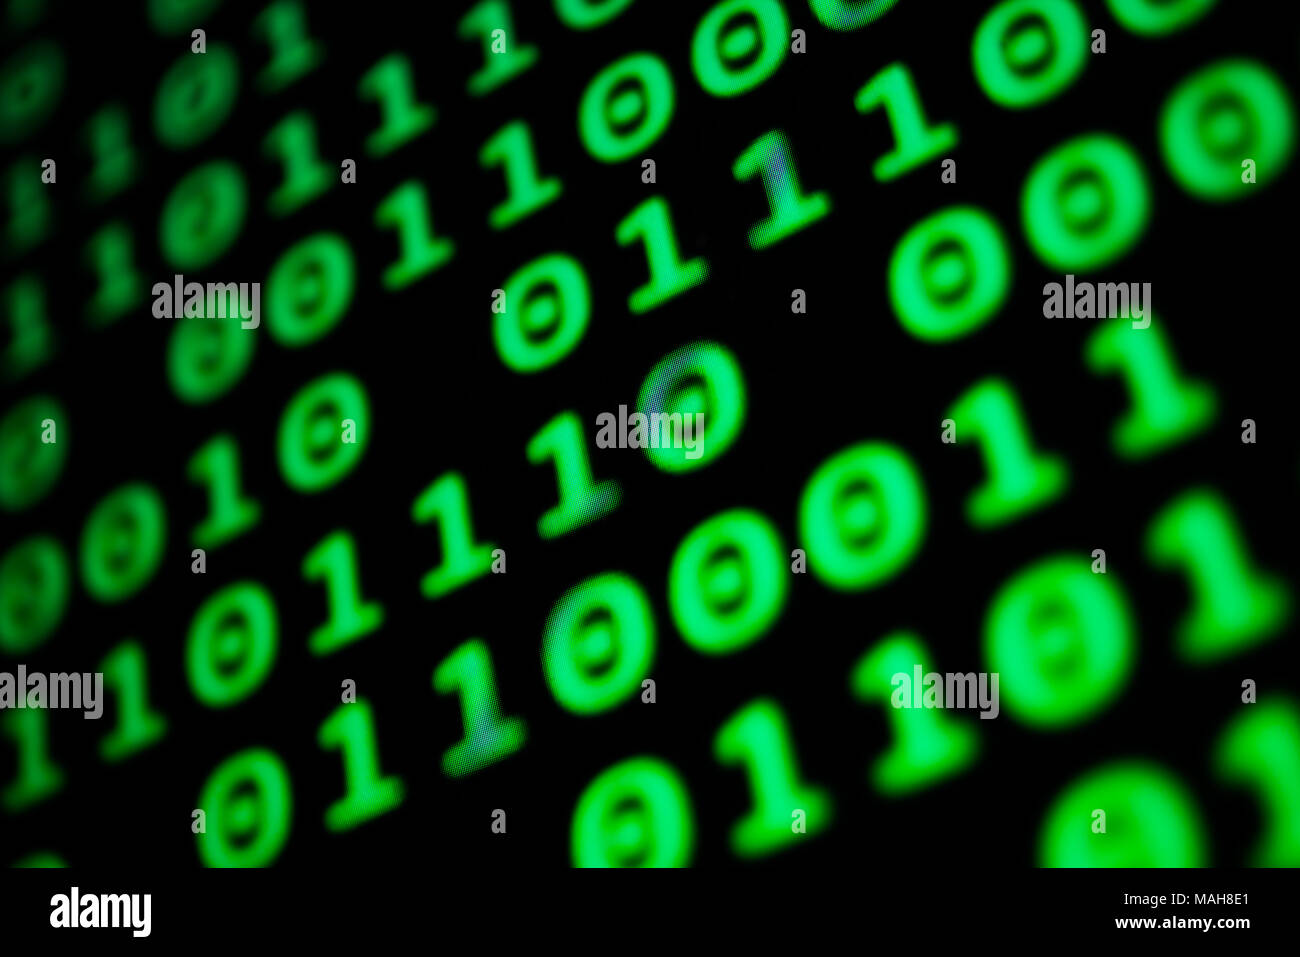 Numerische kontinuierliche Code in grüner Farbe, Zusammenfassung web Daten  in binärer Code Stockfotografie - Alamy